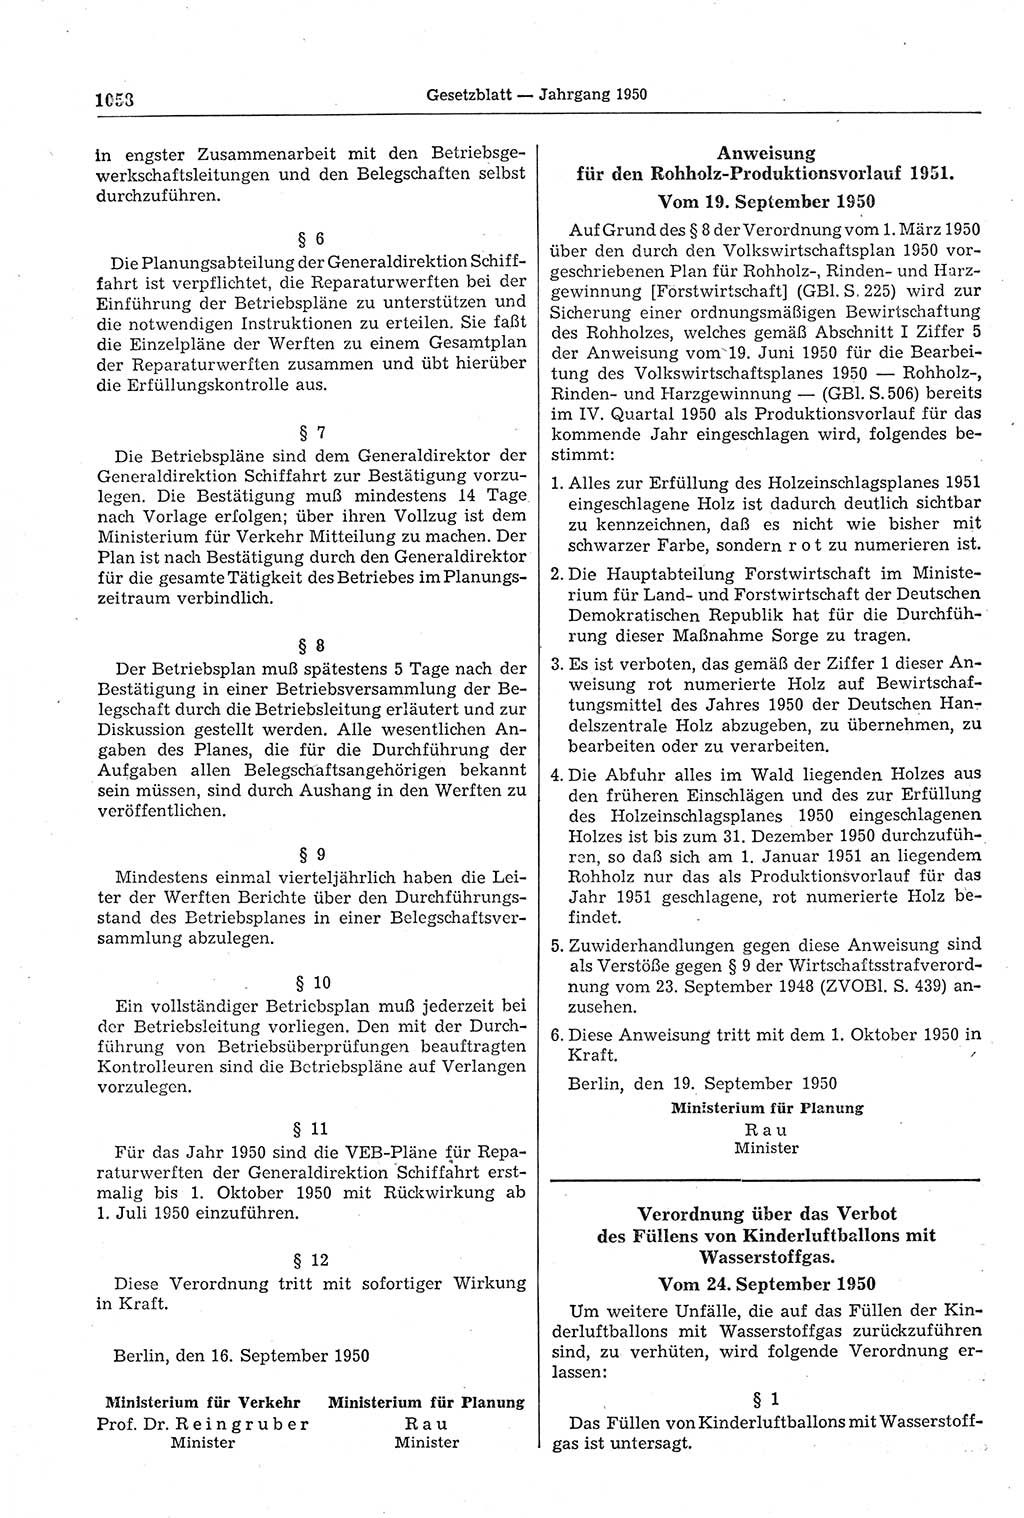 Gesetzblatt (GBl.) der Deutschen Demokratischen Republik (DDR) 1950, Seite 1058 (GBl. DDR 1950, S. 1058)